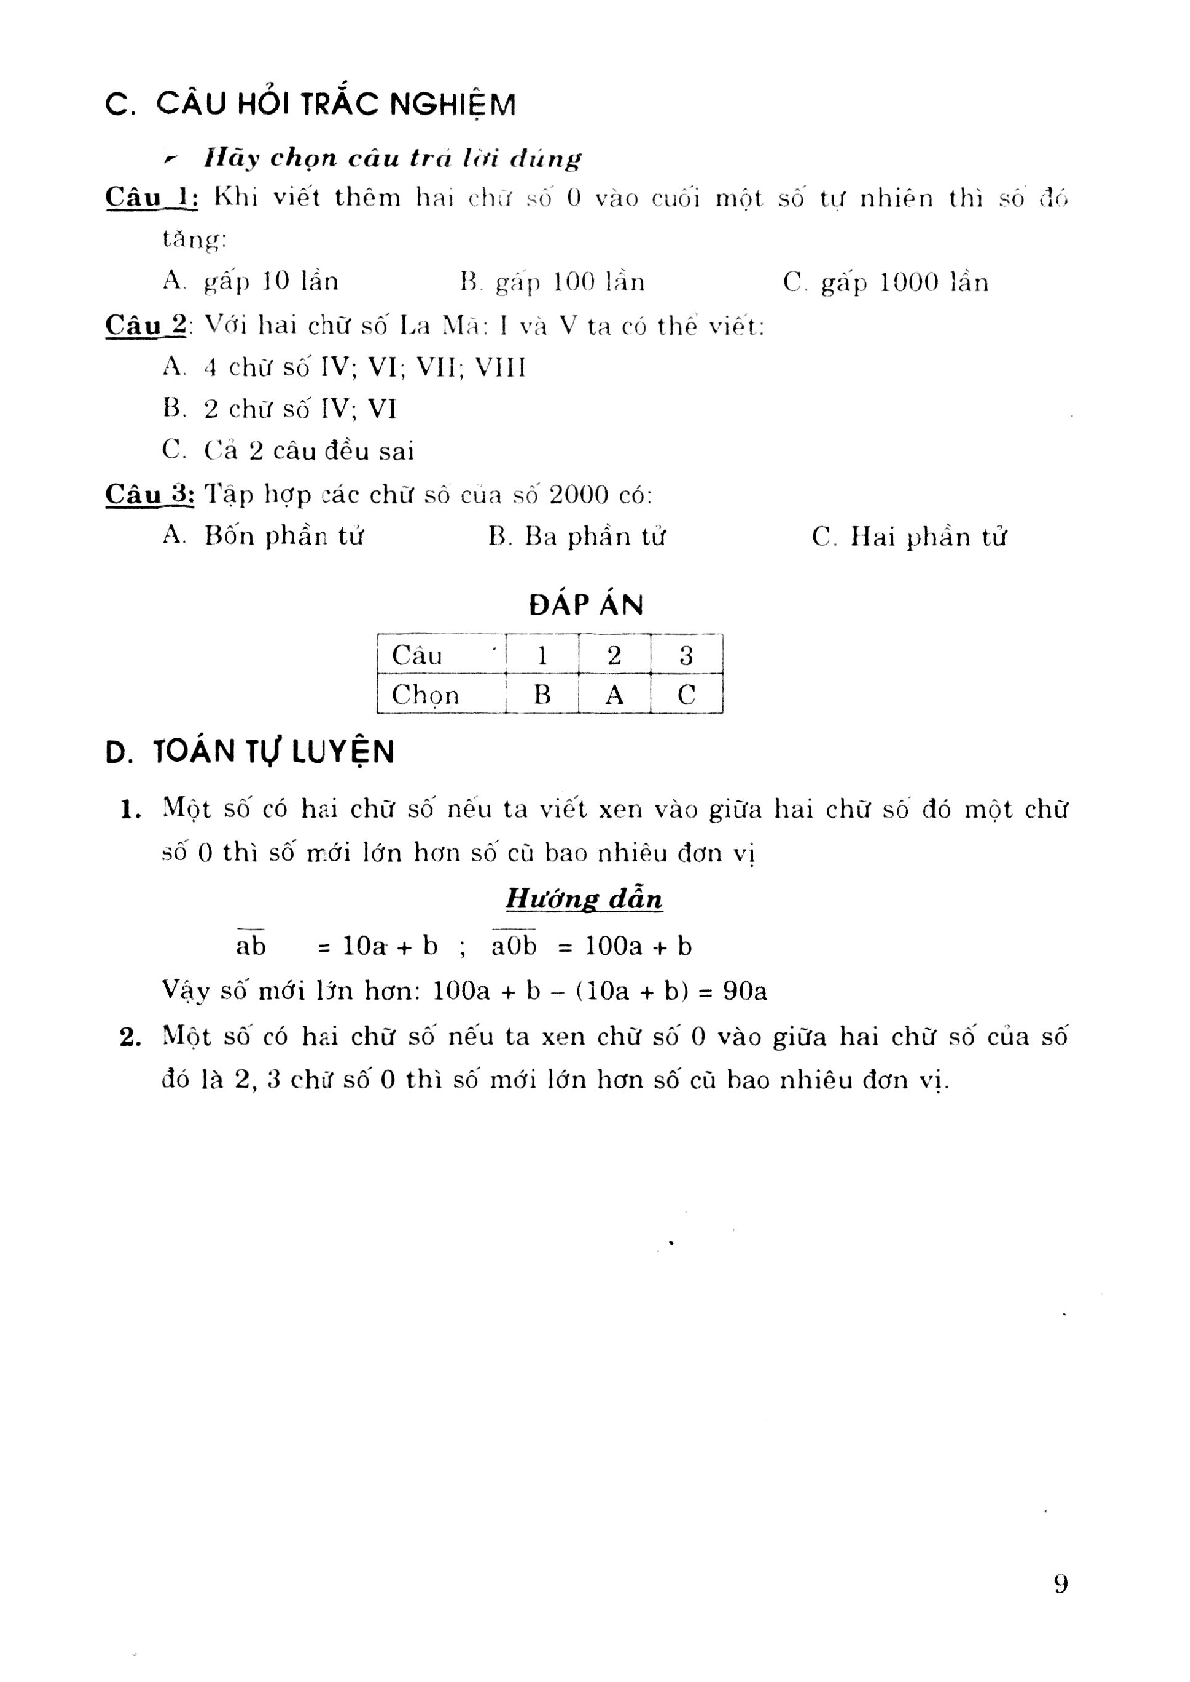 Phương pháp giải toán tự luận và trắc nghiệm nâng cao 6 (trang 7)